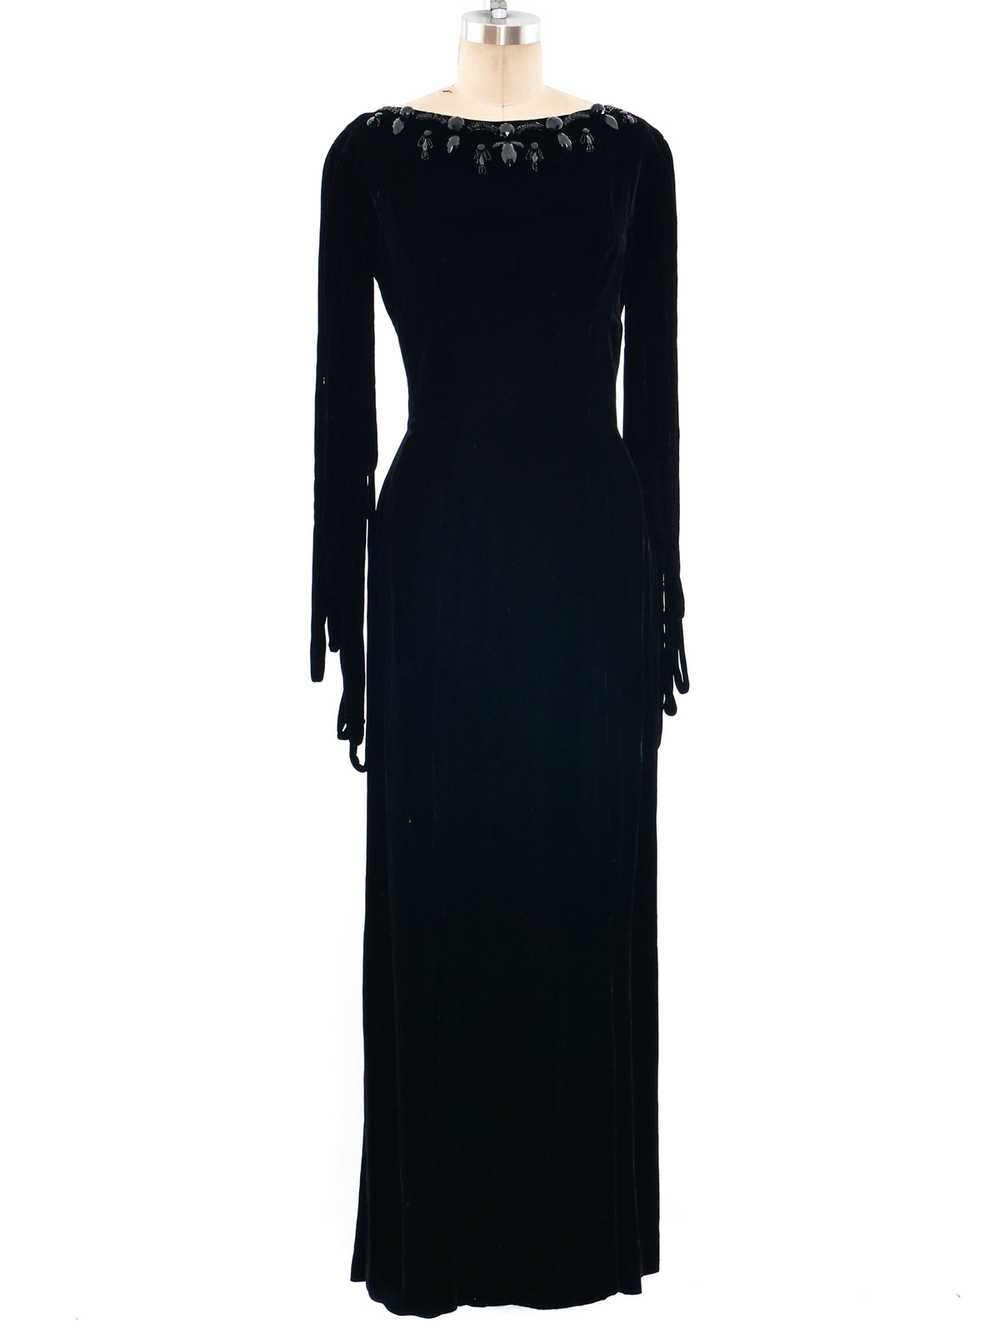 Fringed Velvet Dress - image 1